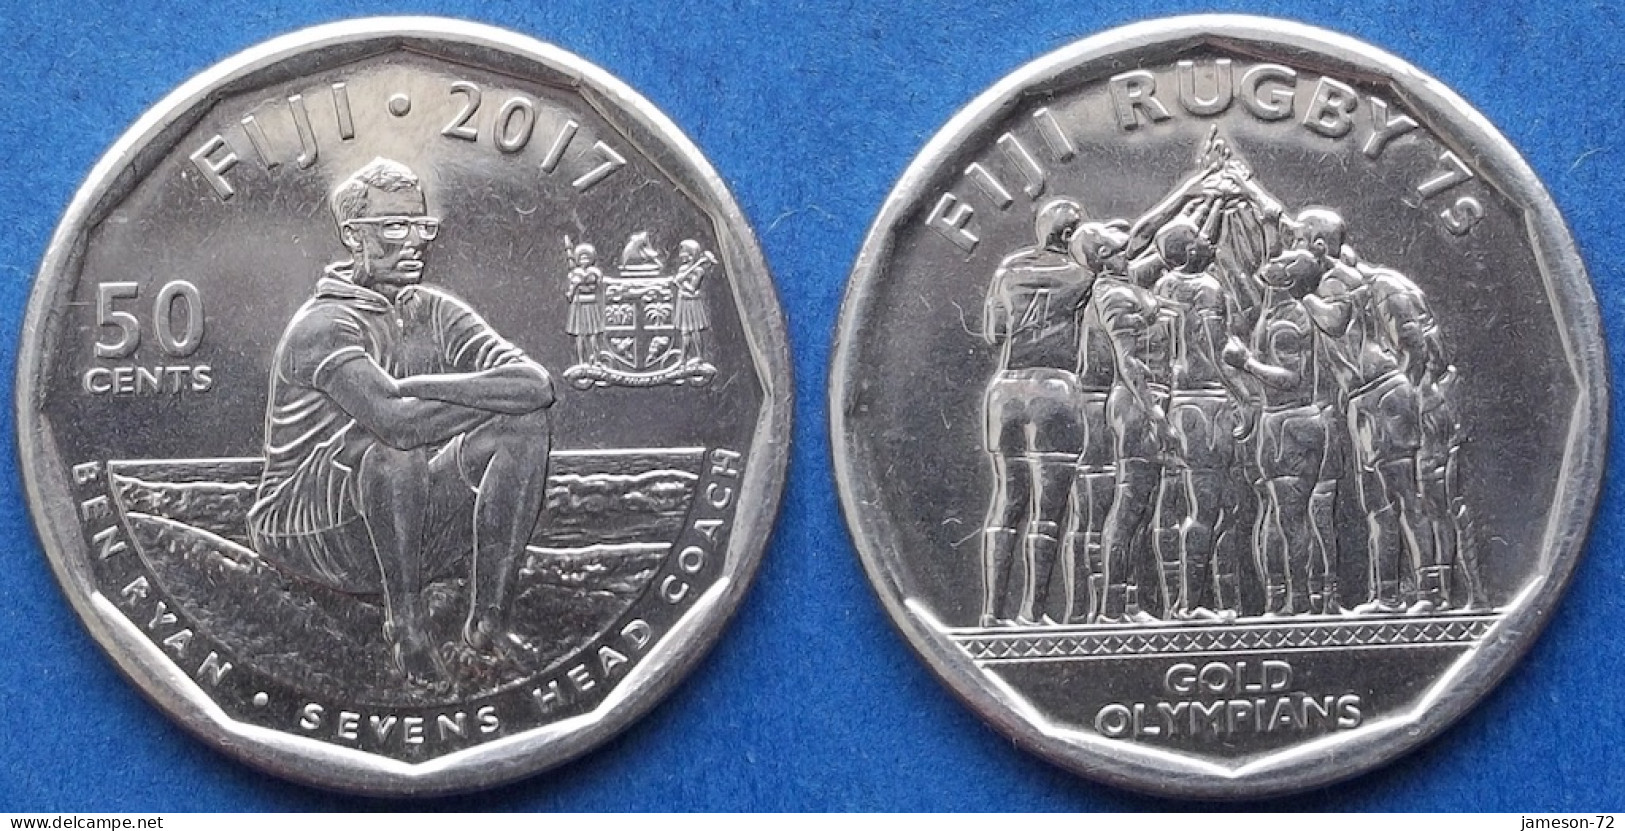 FIJI - 50 Cents 2017 "Fiji Rugby 7s - Gold Olympians" KM# 528 Elizabeth II Decimal Coinage (1971-2022) - Edelweiss Coins - Fiji